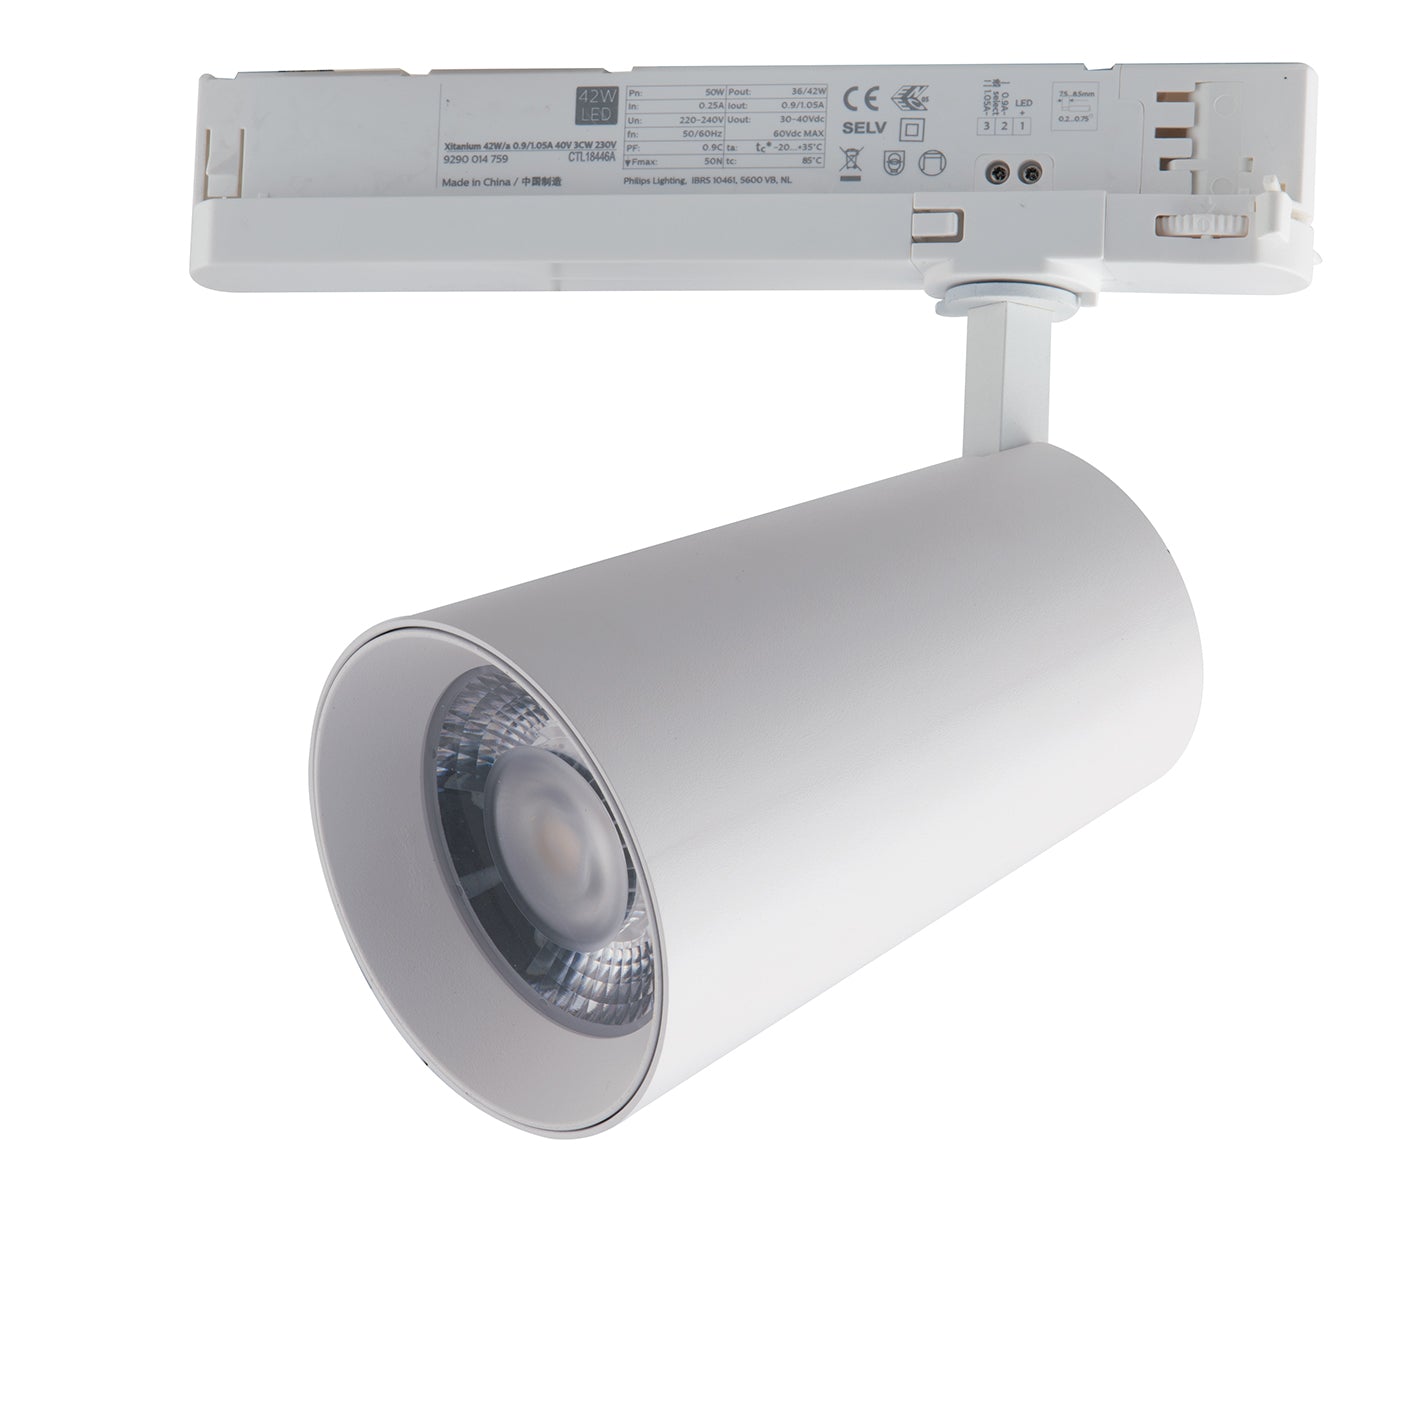 Faro LED KONE con adaptador trifásico de 30W con interruptor CCT para cambio de temperatura de color